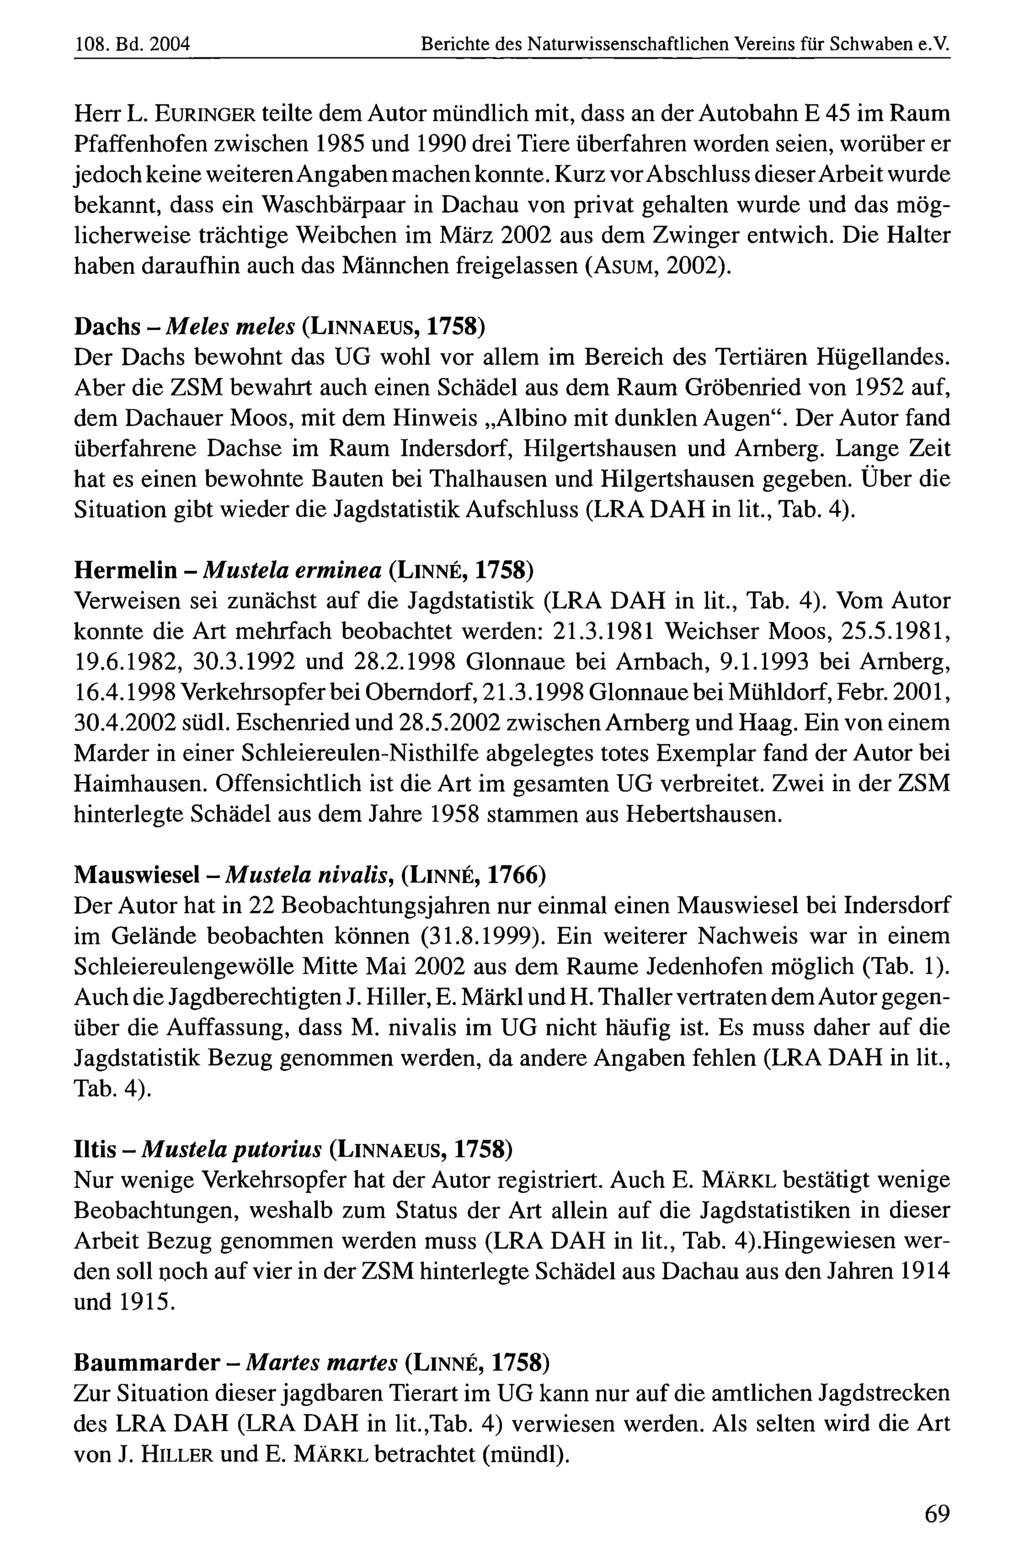 108. Bd. 2004 Naturwissenschaftlicher Verein Berichte für Schwaben, des Naturwissenschaftlichen download unter www.biologiezentrum.at Vereins für Schwaben e.v. Herr L.